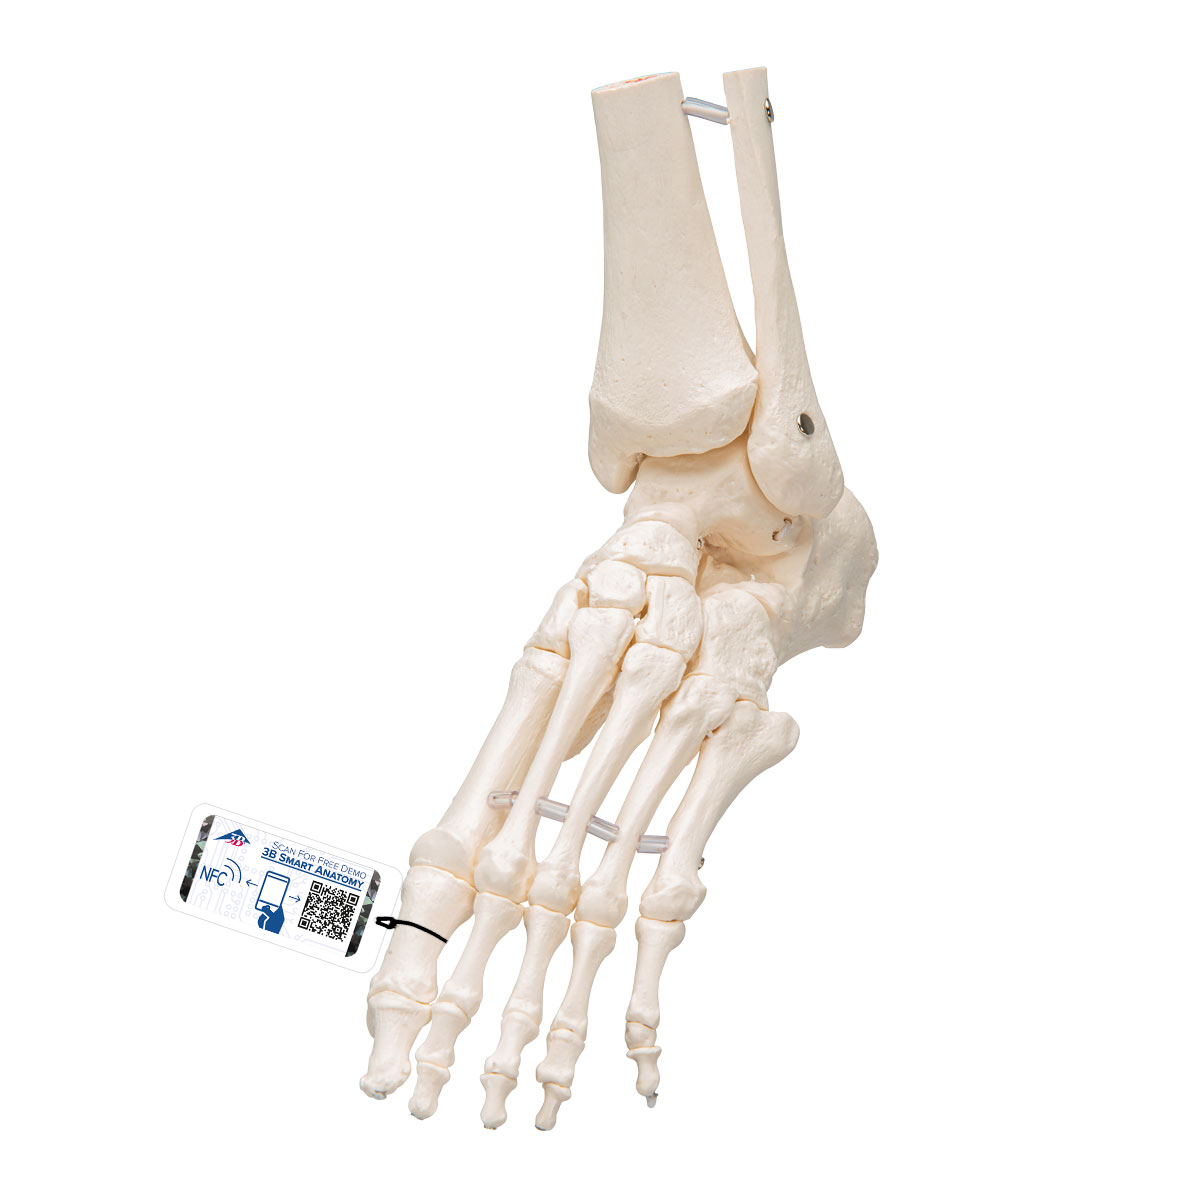 Fußskelett Modell mit Schienbein- und Wadenbeinstumpf, elastisch montiert - 3B Smart Anatomy, Bestellnummer 1019358, A31/1, 3B Scientific